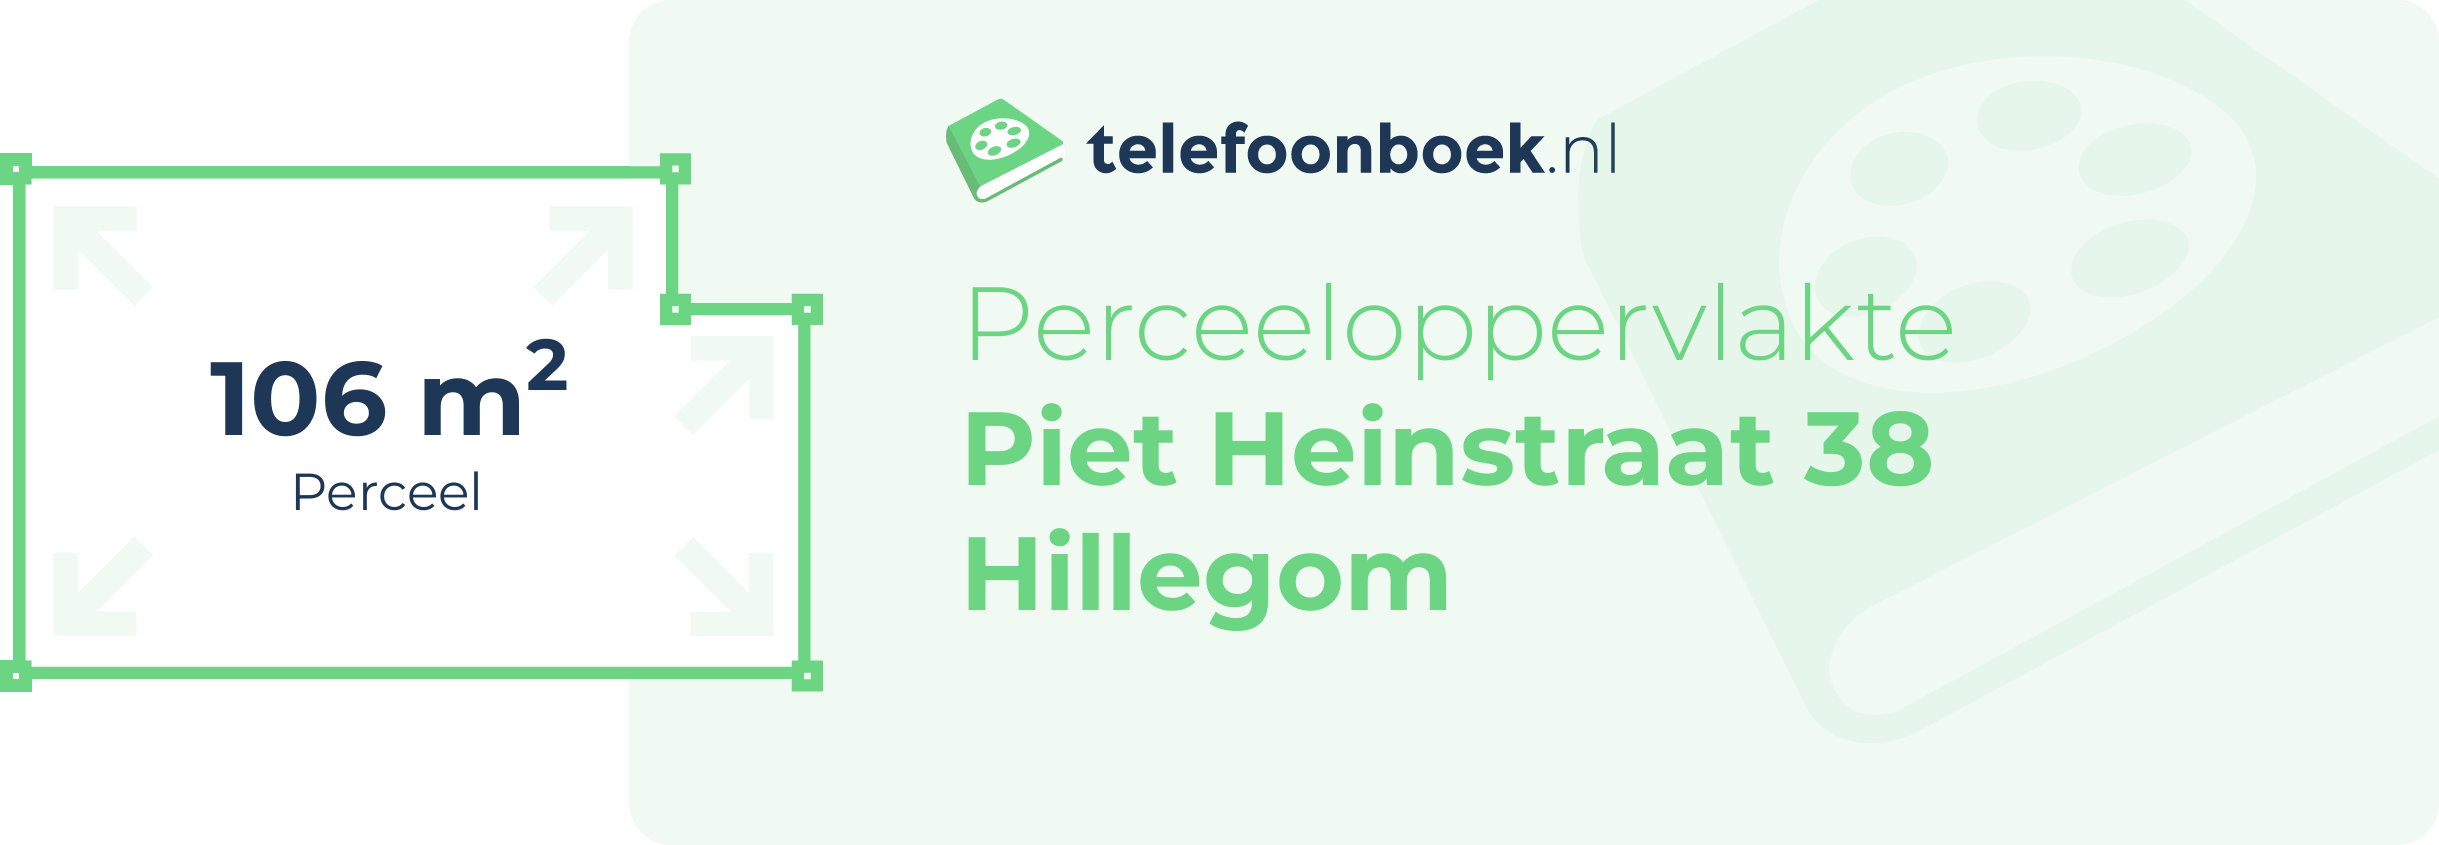 Perceeloppervlakte Piet Heinstraat 38 Hillegom